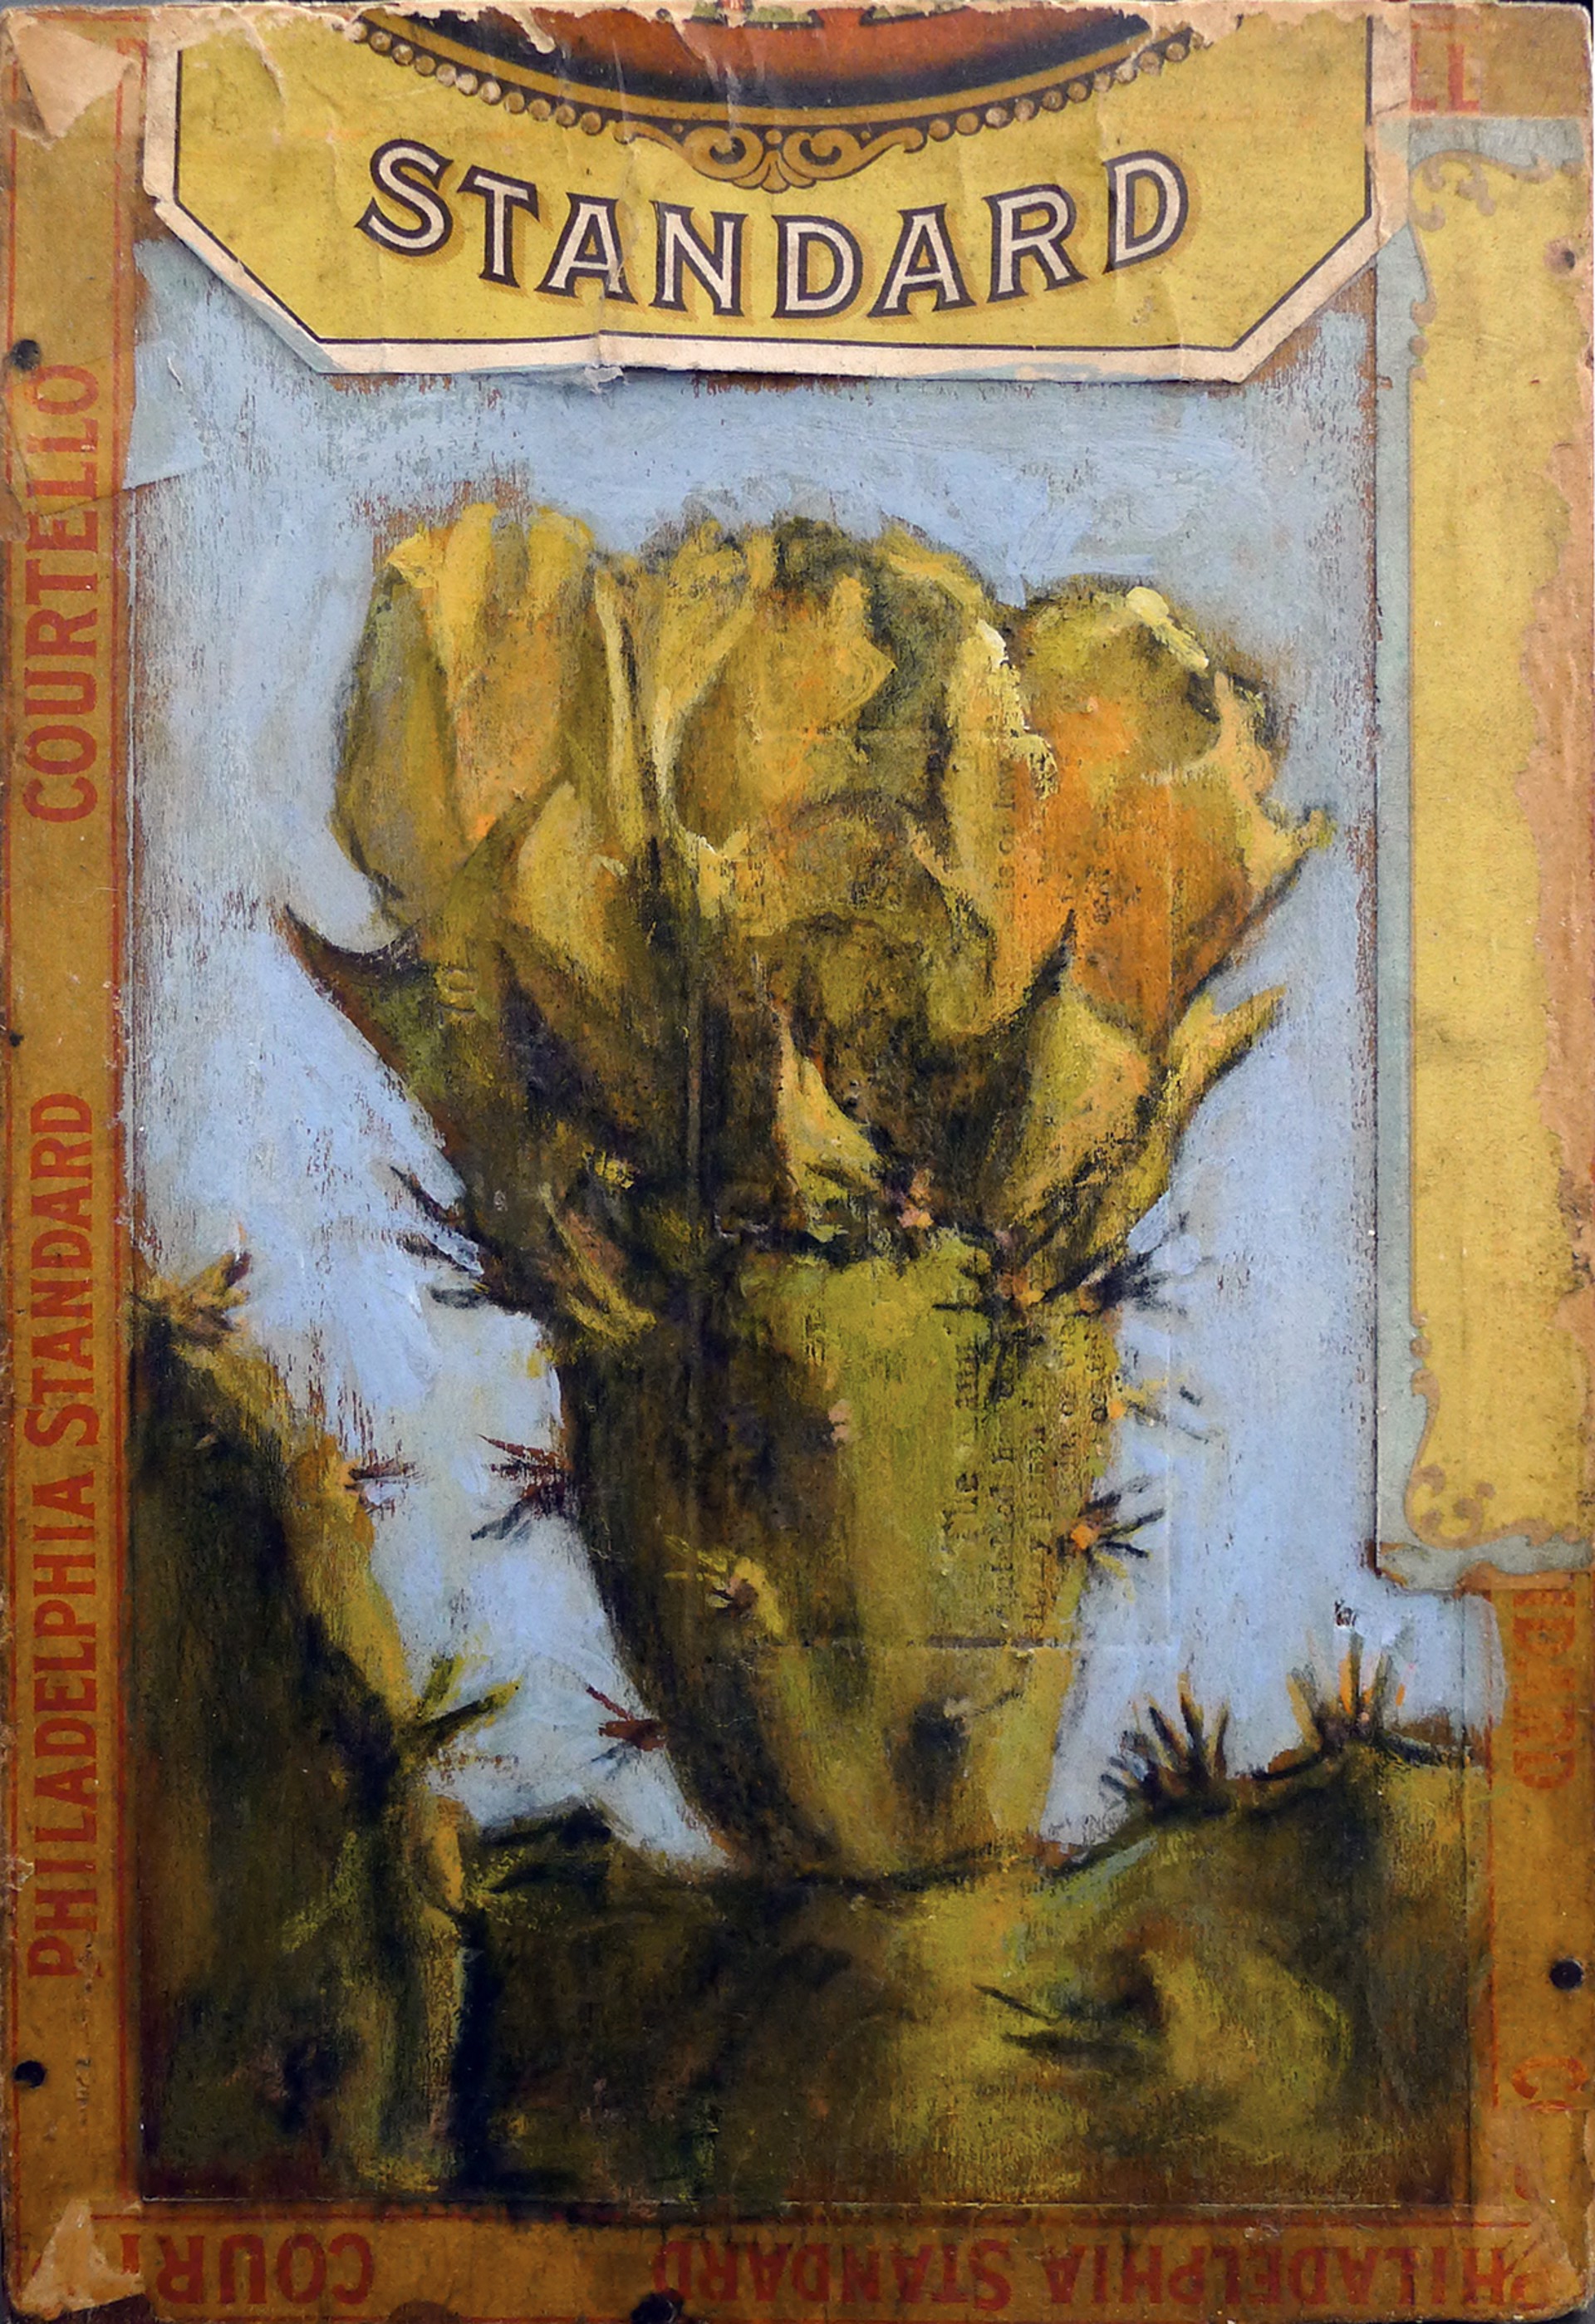 Cactus Flower / Standard by Ed Musante